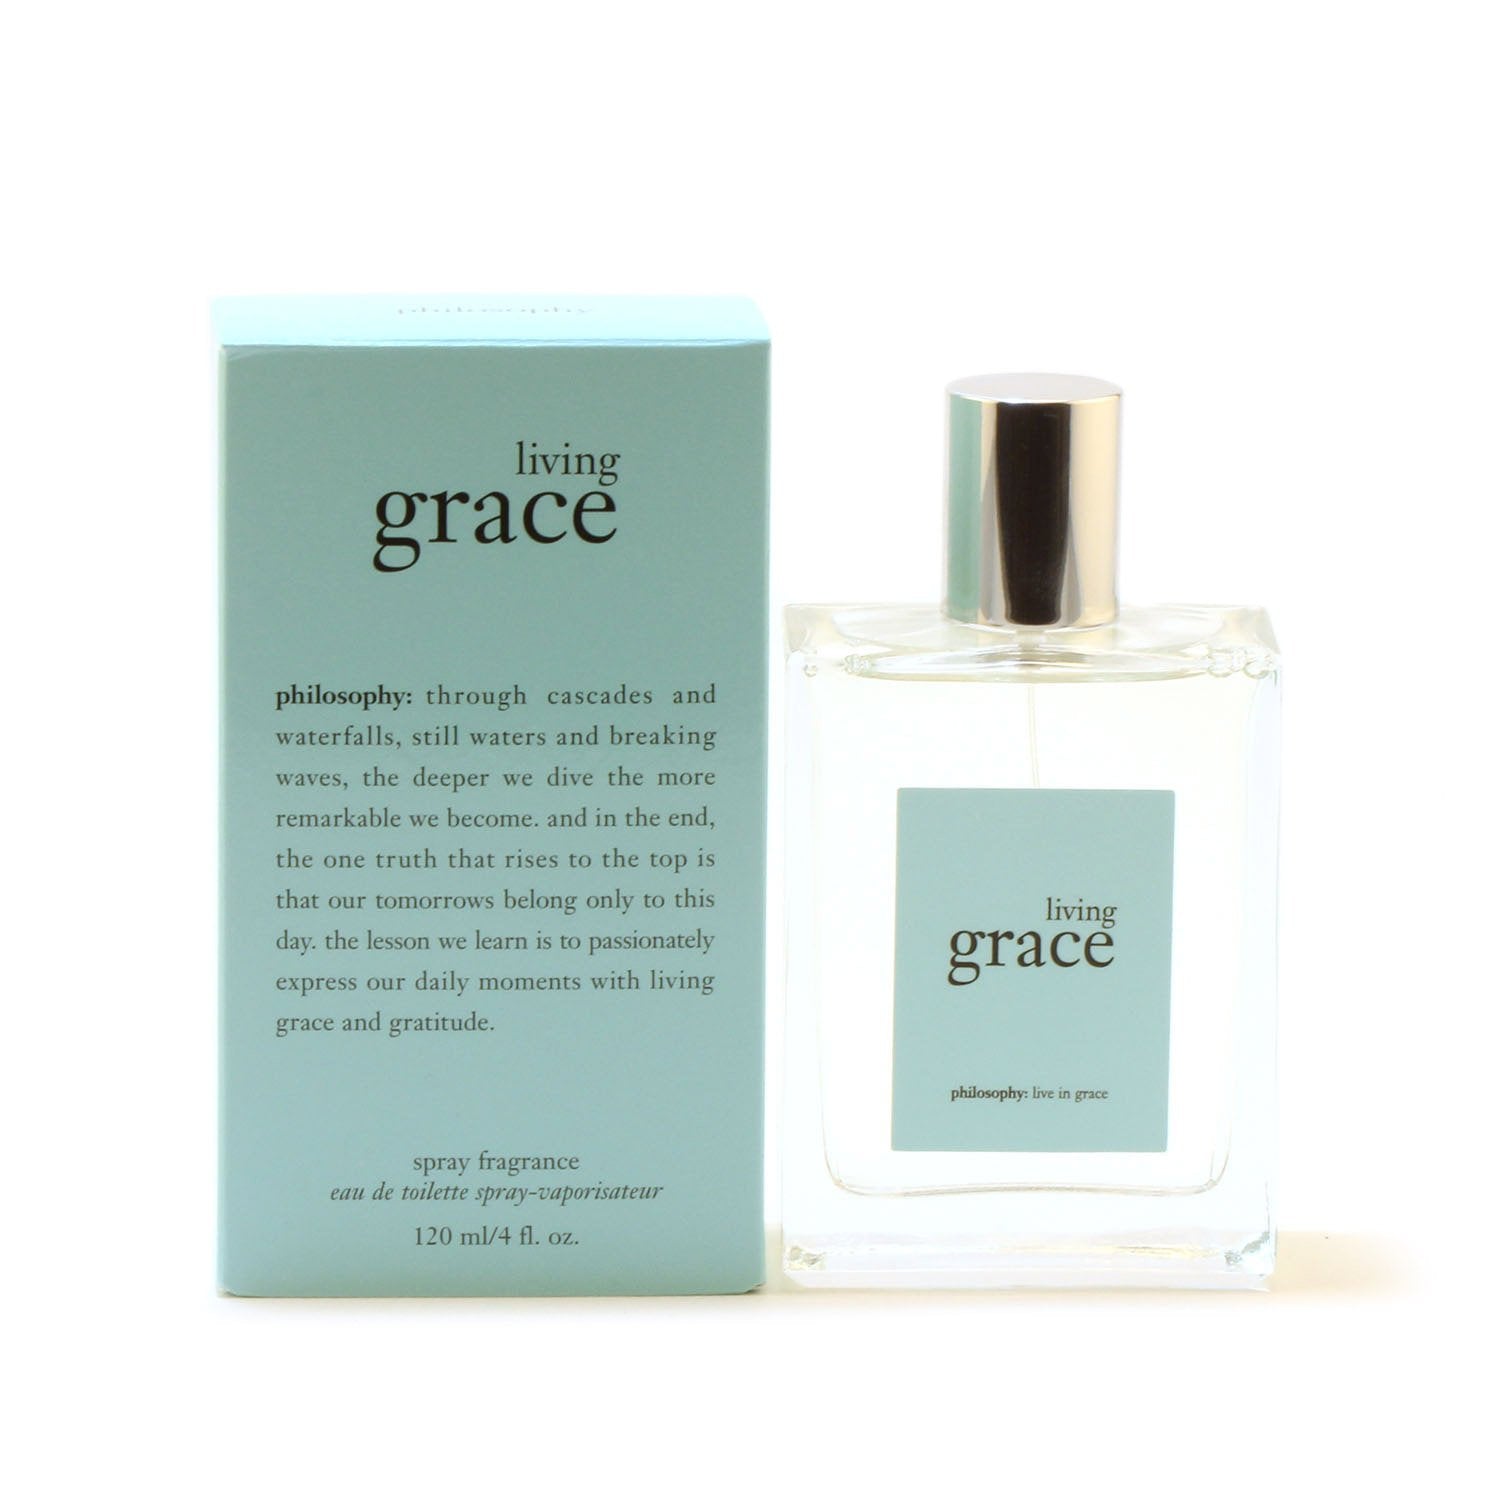 Perfume - PHILOSOPHY LIVING GRACE FOR WOMEN - EAU DE TOILETTE SPRAY, 4.0 OZ